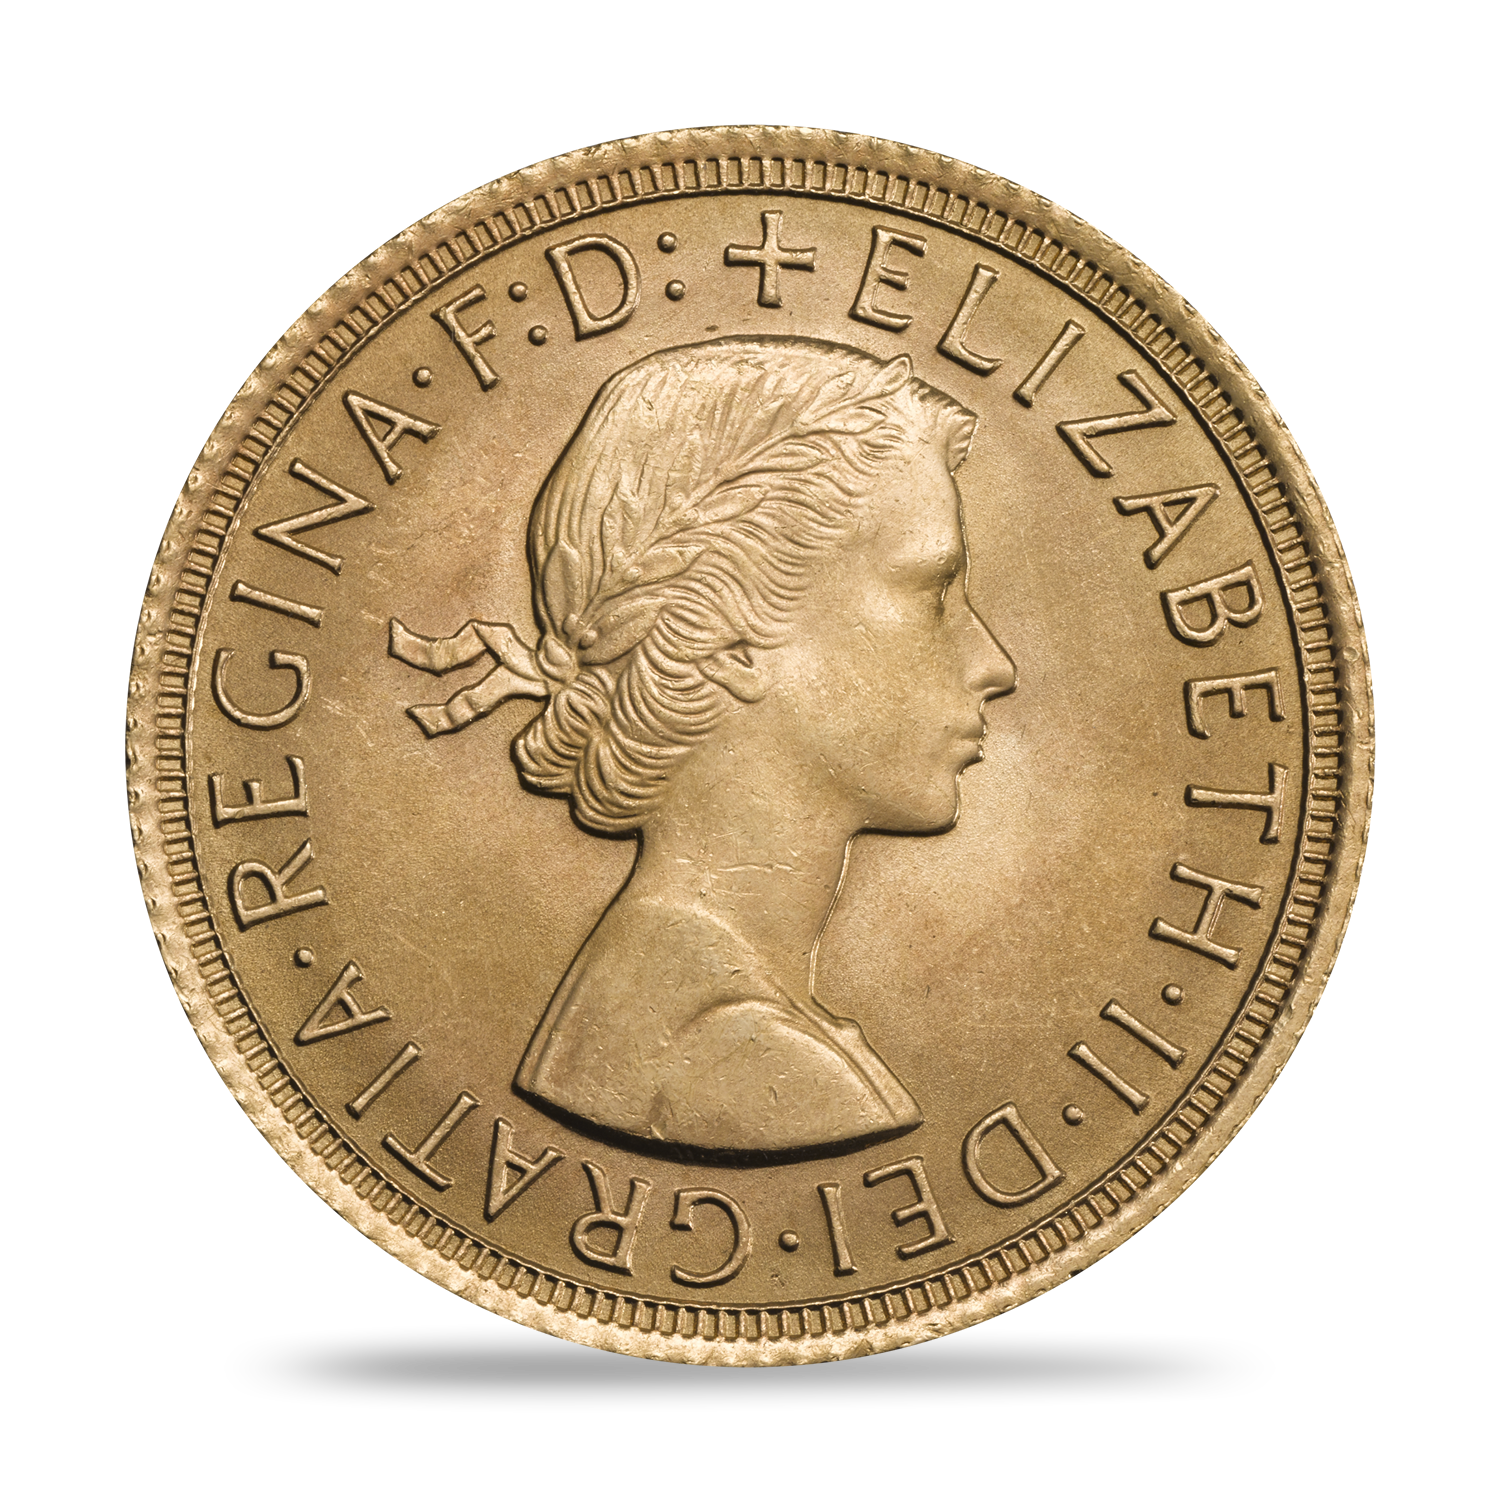 Queen Elizabeth II Coins